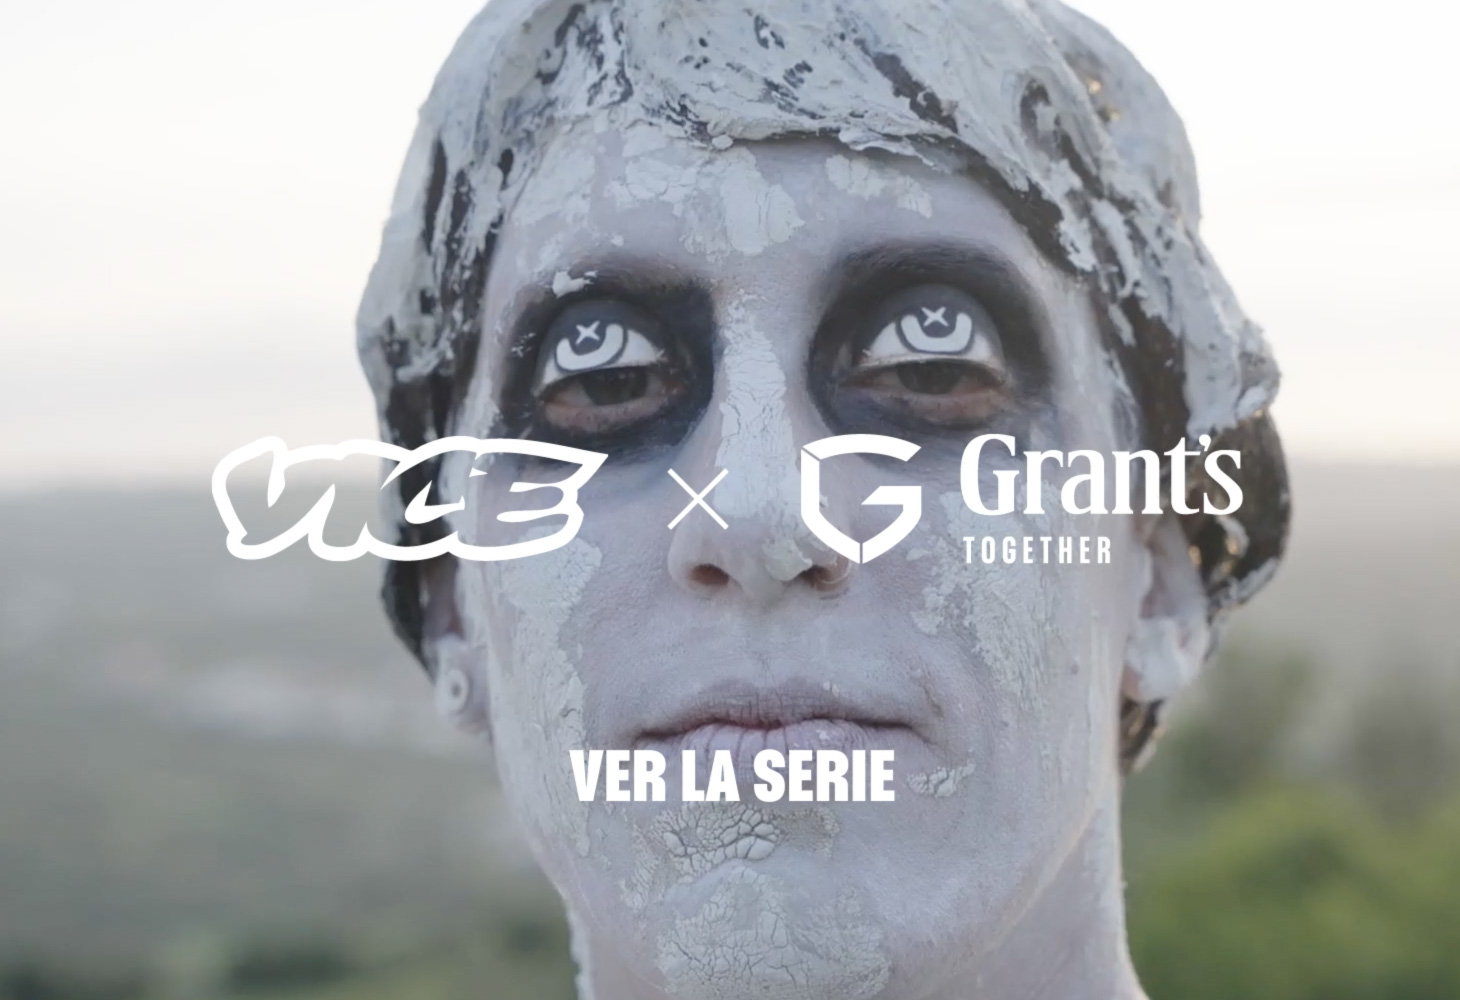 VICE x Grant's — Ver la serie